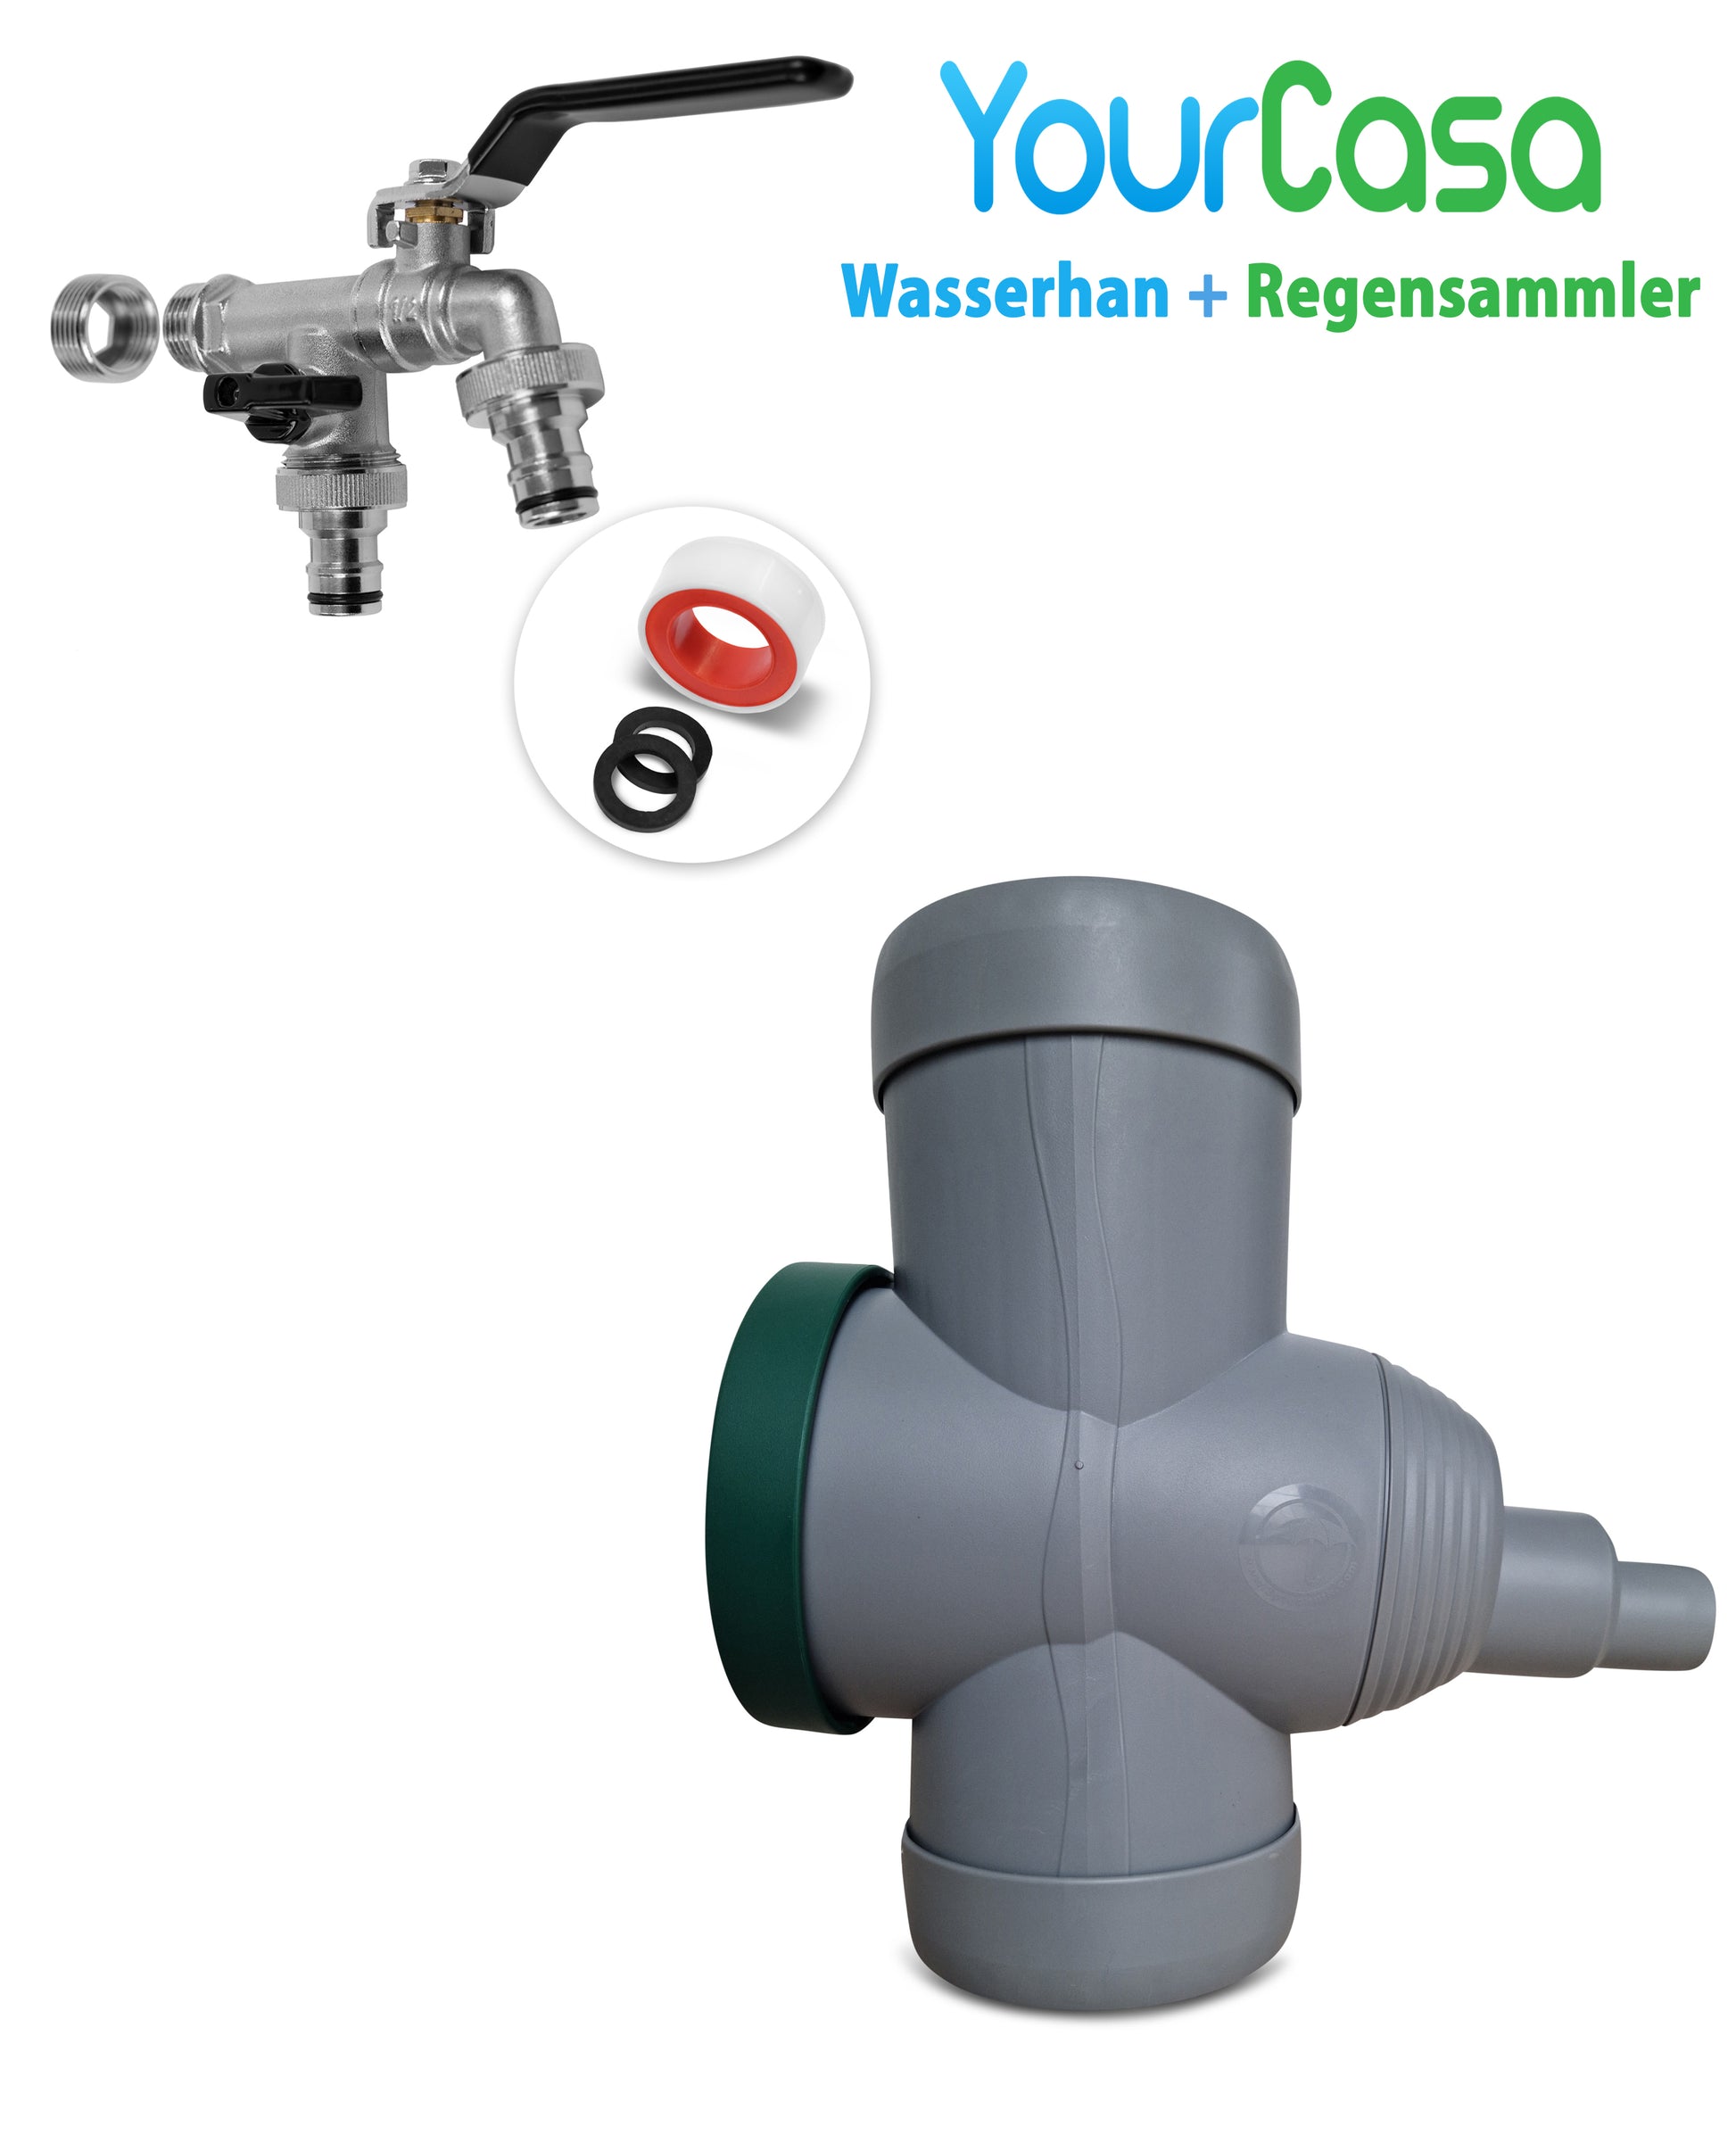 Regenwasserverteiler mit Überlaufschutz und Zubehör für Fallrohr: YourCasa® Regensammler [Downpipe70] + Wasserhahn Messing von yourcasa-de.